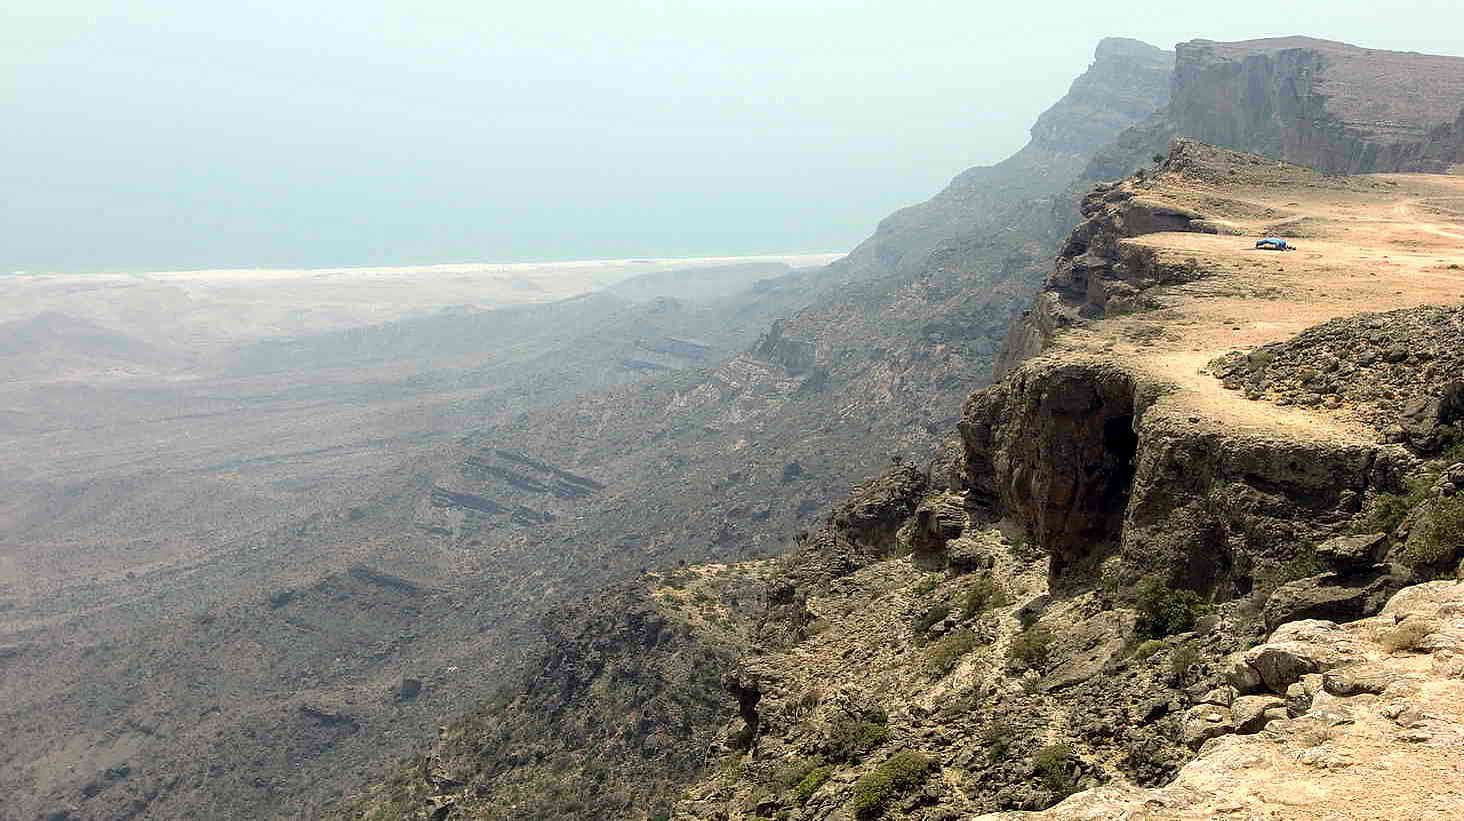 lah-ganzt%C3%A4gige-Rundfahrt-ins-Hinterland-mit-dem-Wadi-Darbat-und-dem-Felsmassiv-Jebel-Samhan.jpg